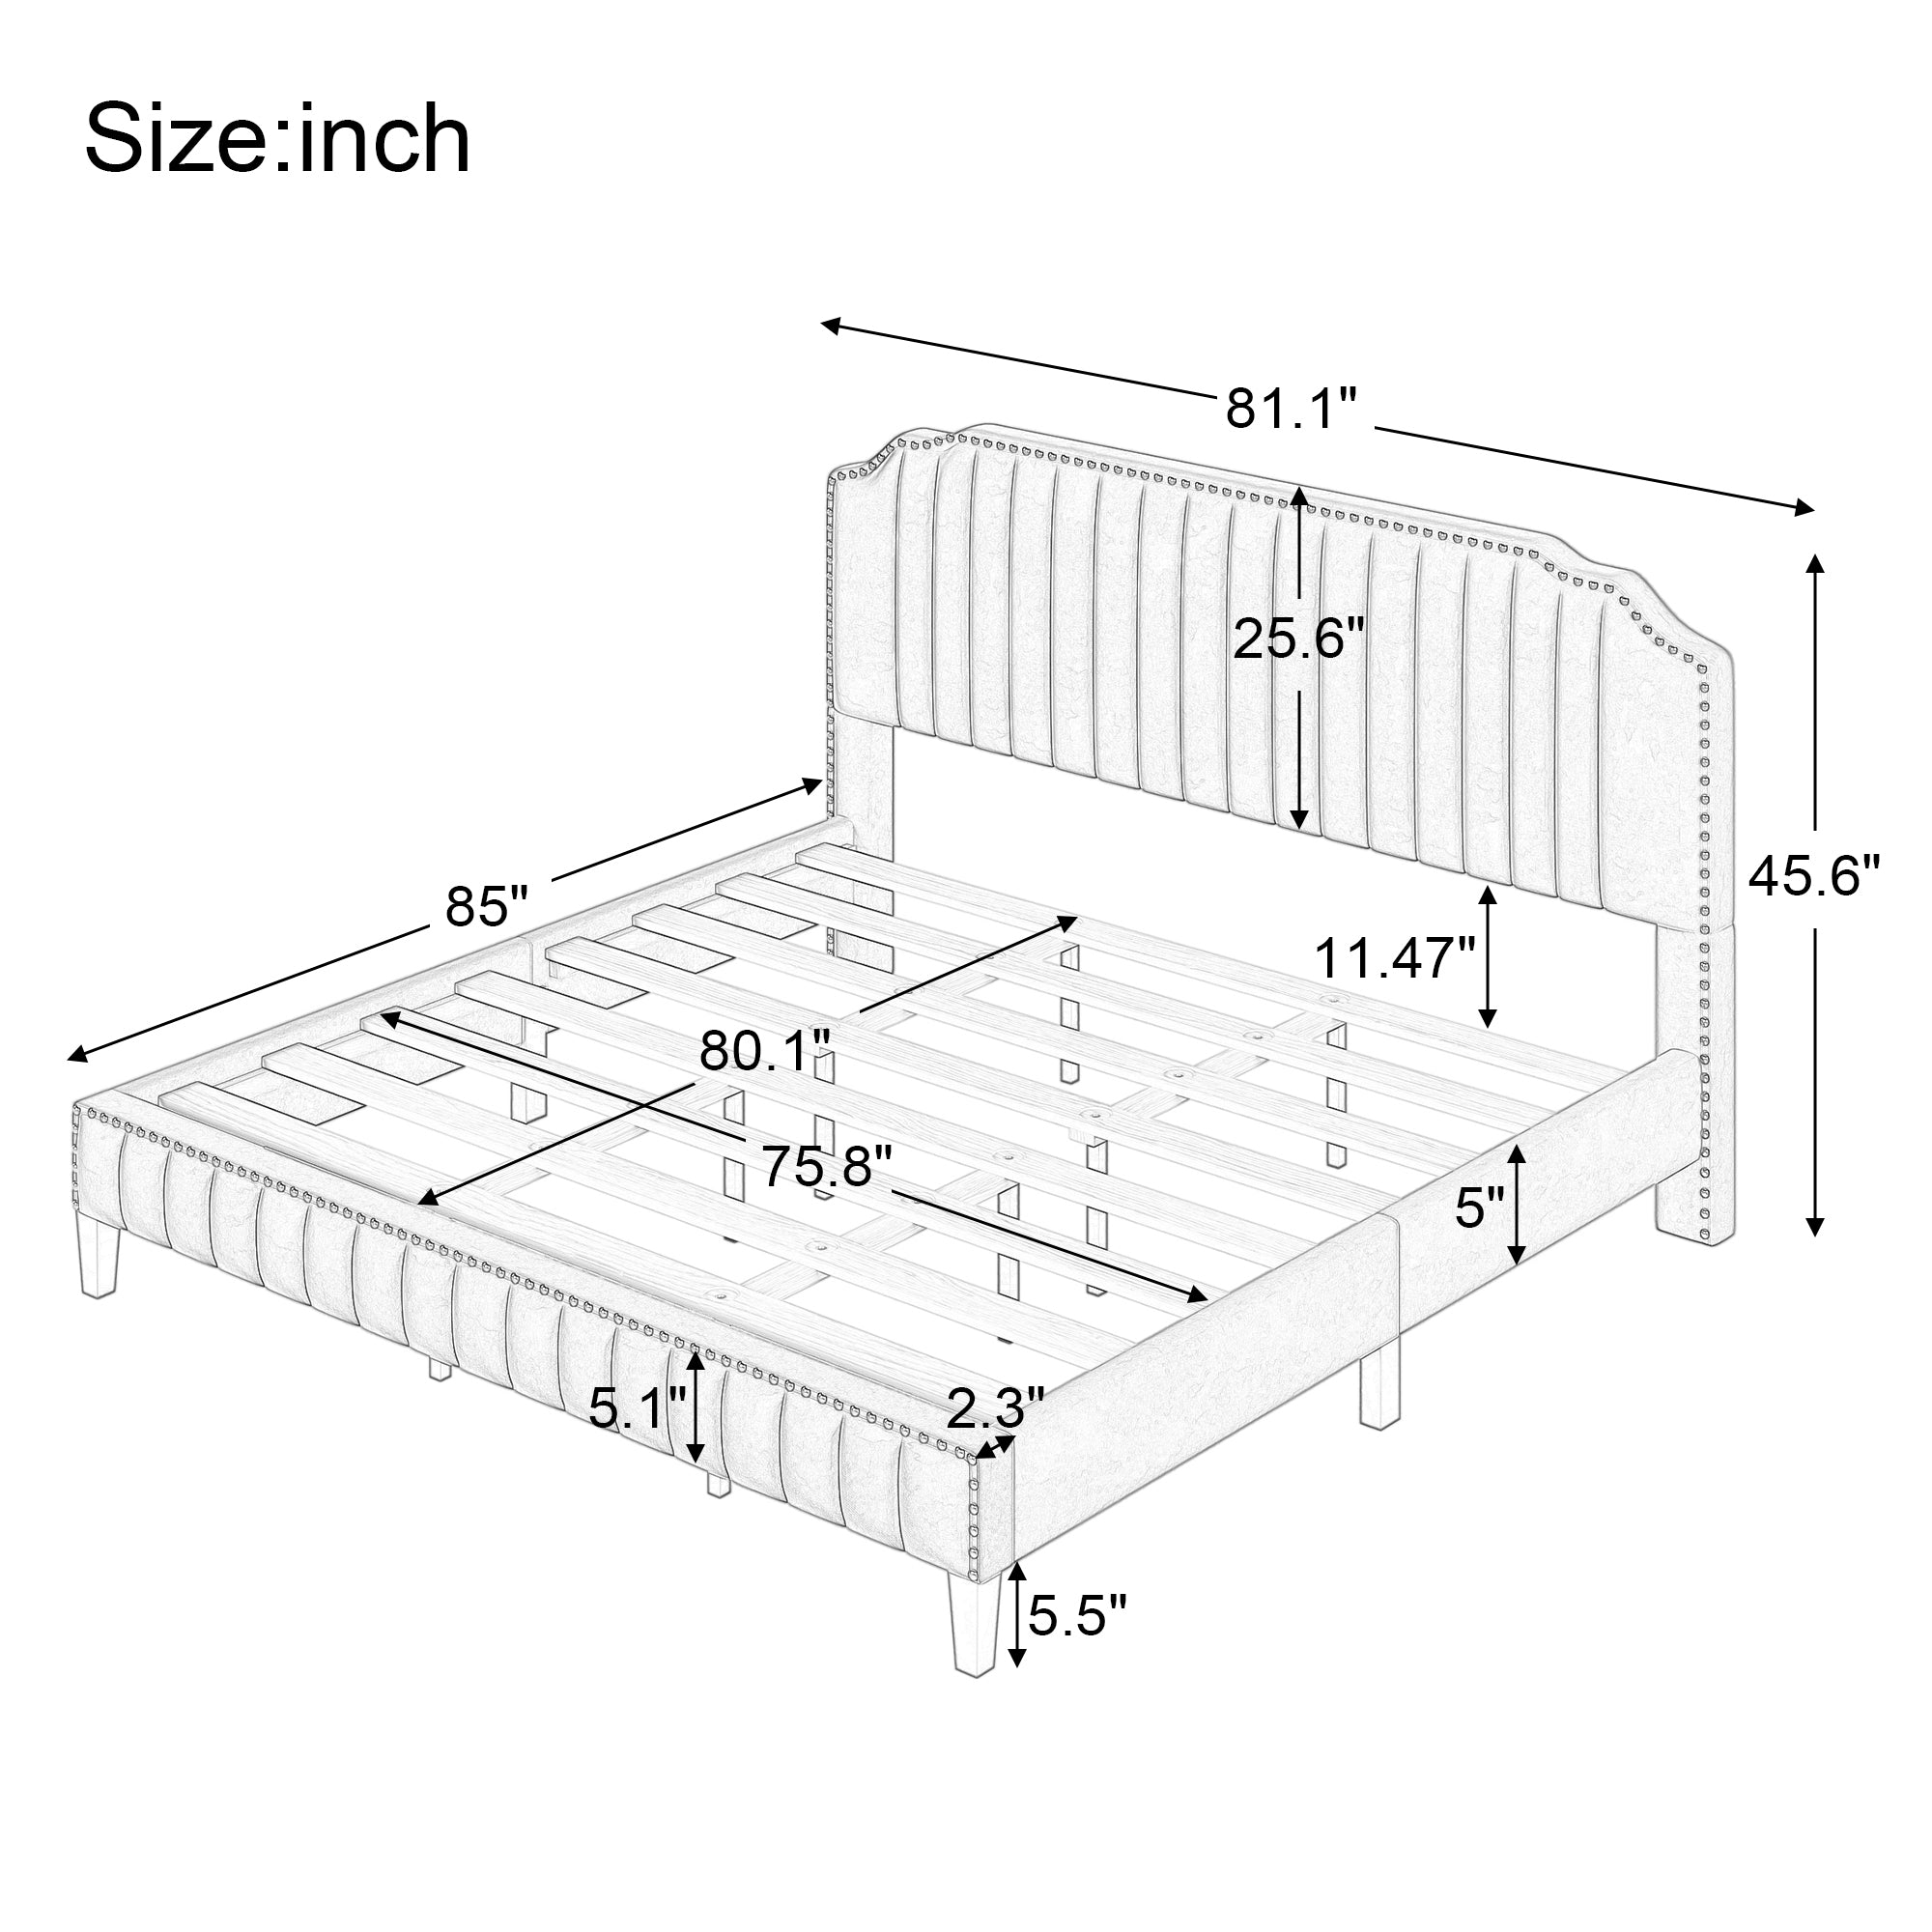 King Modern Linen Curved Solid Wood Platform Bed Frame | Cream By: Alabama Beds